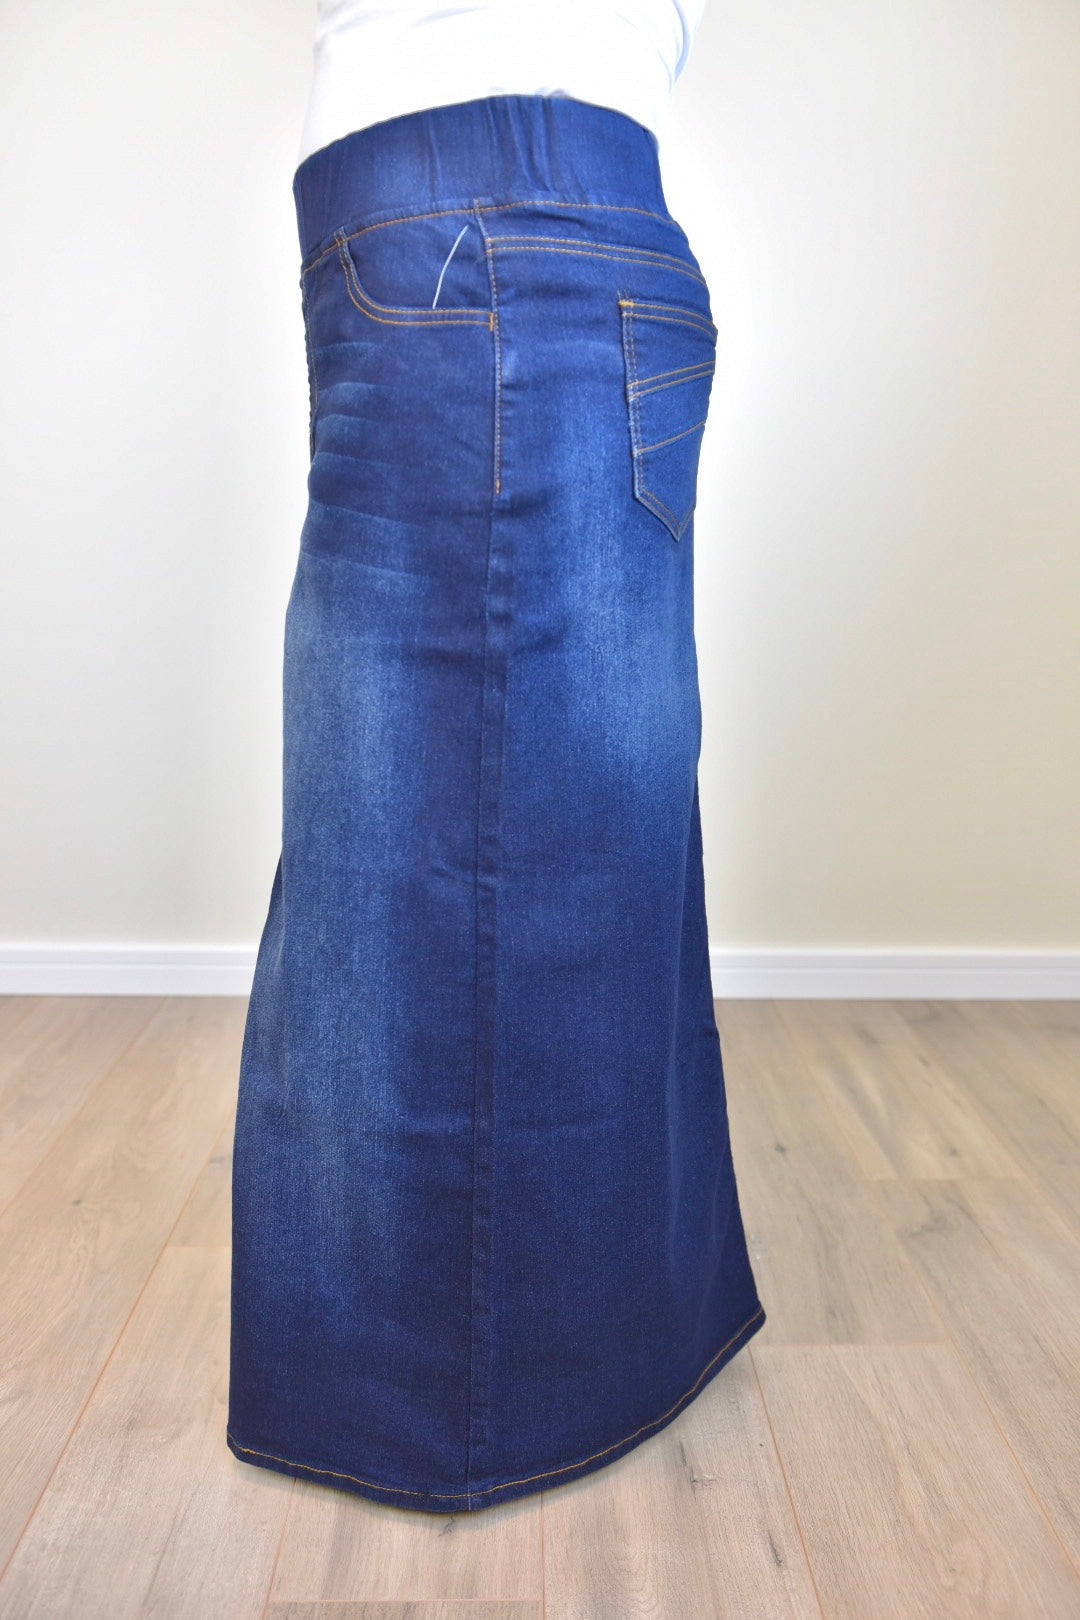 "Harper" Dark Indigo Long Straight Denim Skirt With Elastic Waistband - Ladies & Lavender Boutique